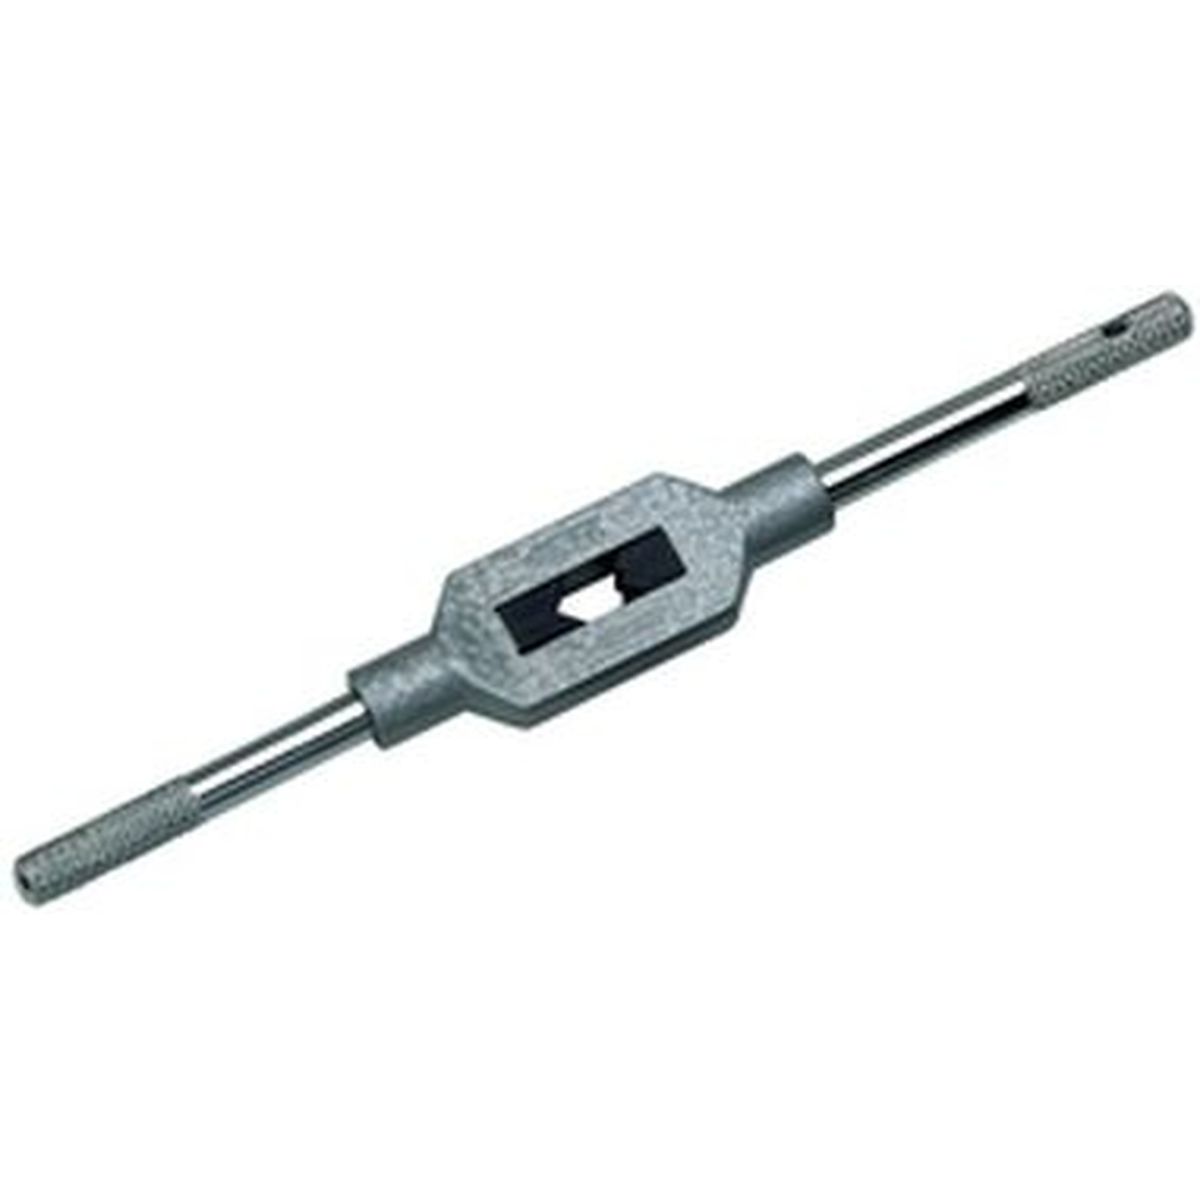 VÖLKEL Adjustable Tap Wrenches DIN1814 1.1/2 